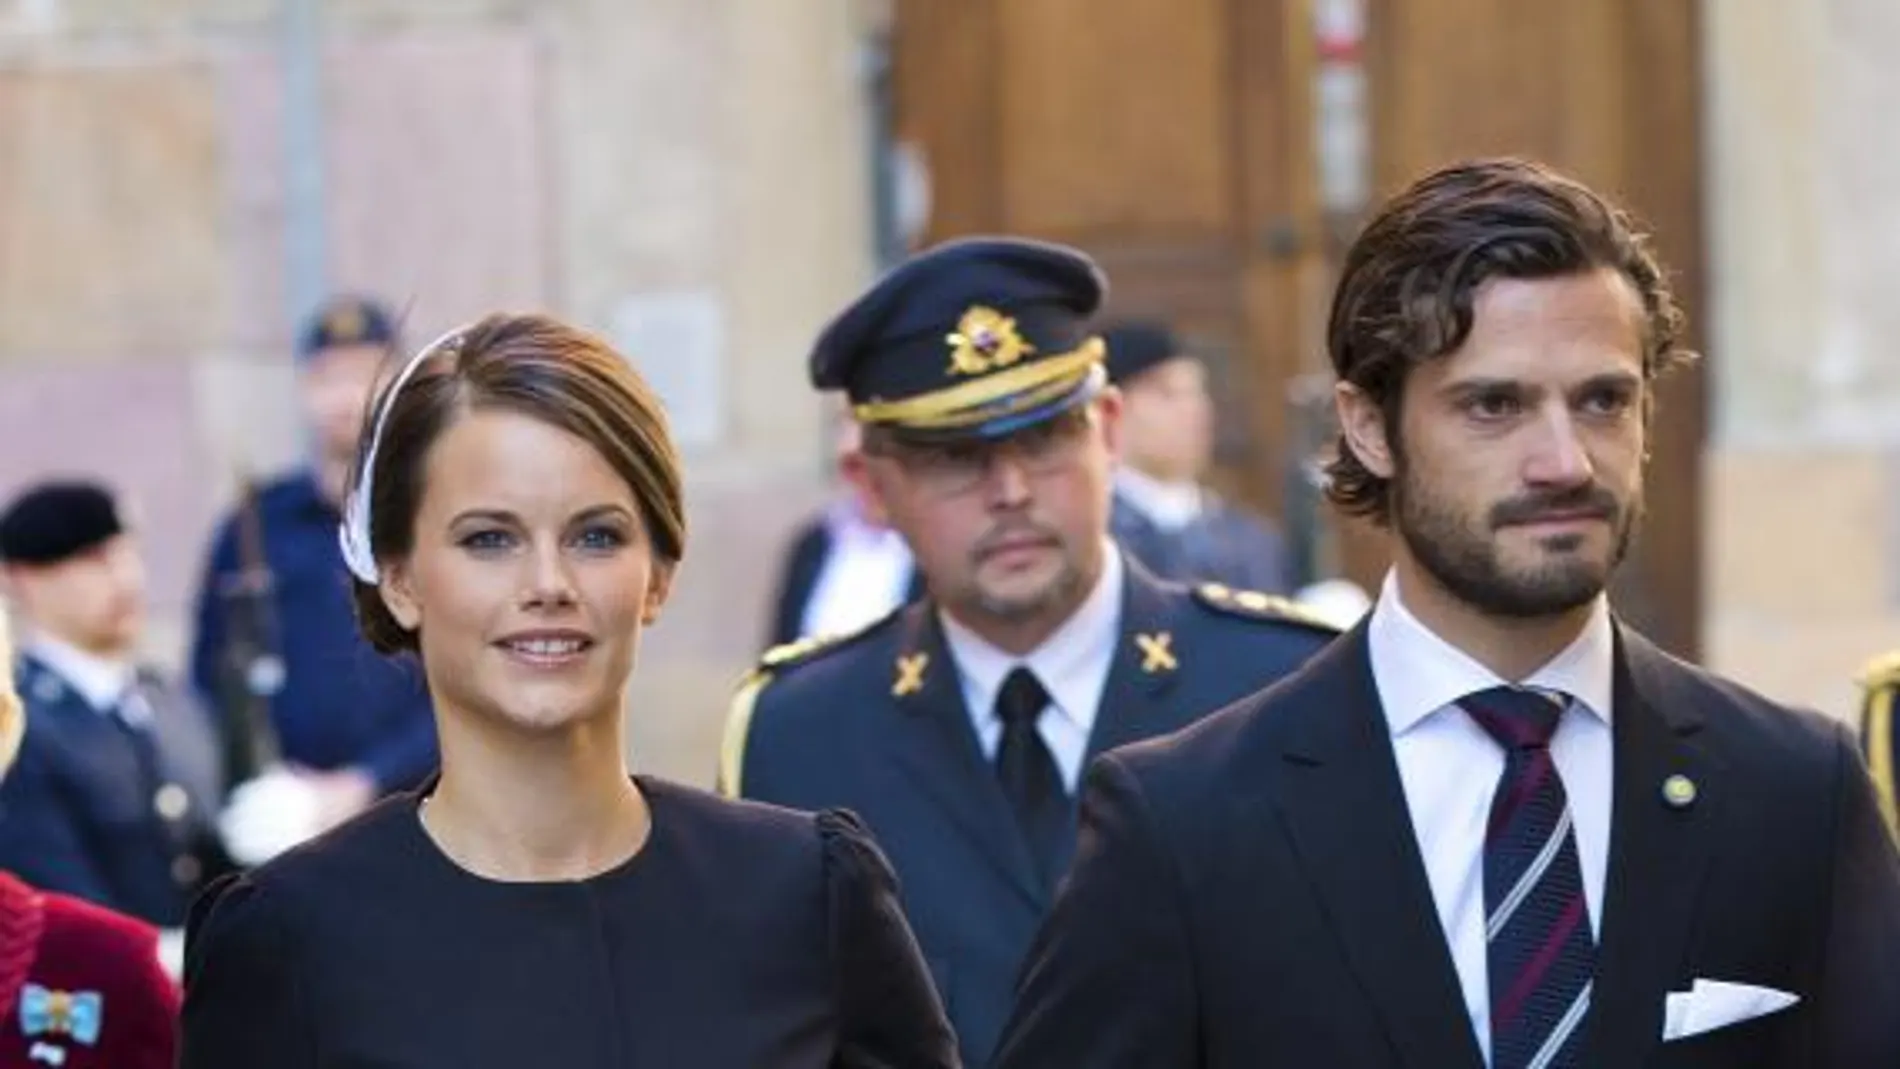 Suecia, lista para el enlace entre el príncipe Carlos Felipe y una exstripper